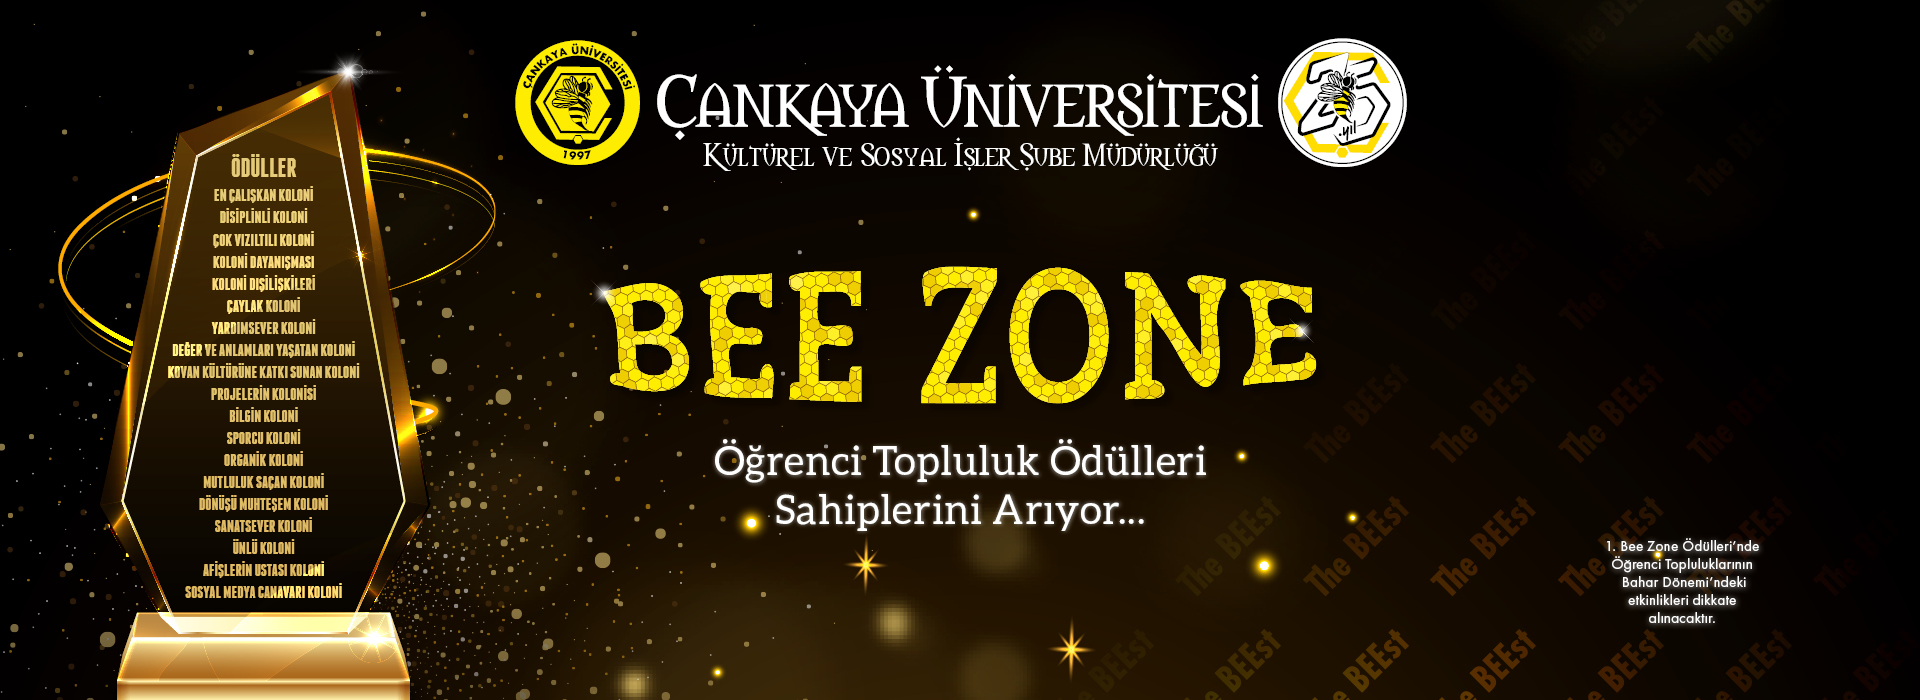 Öğrenci Topluluk Ödülleri “Bee Zone”